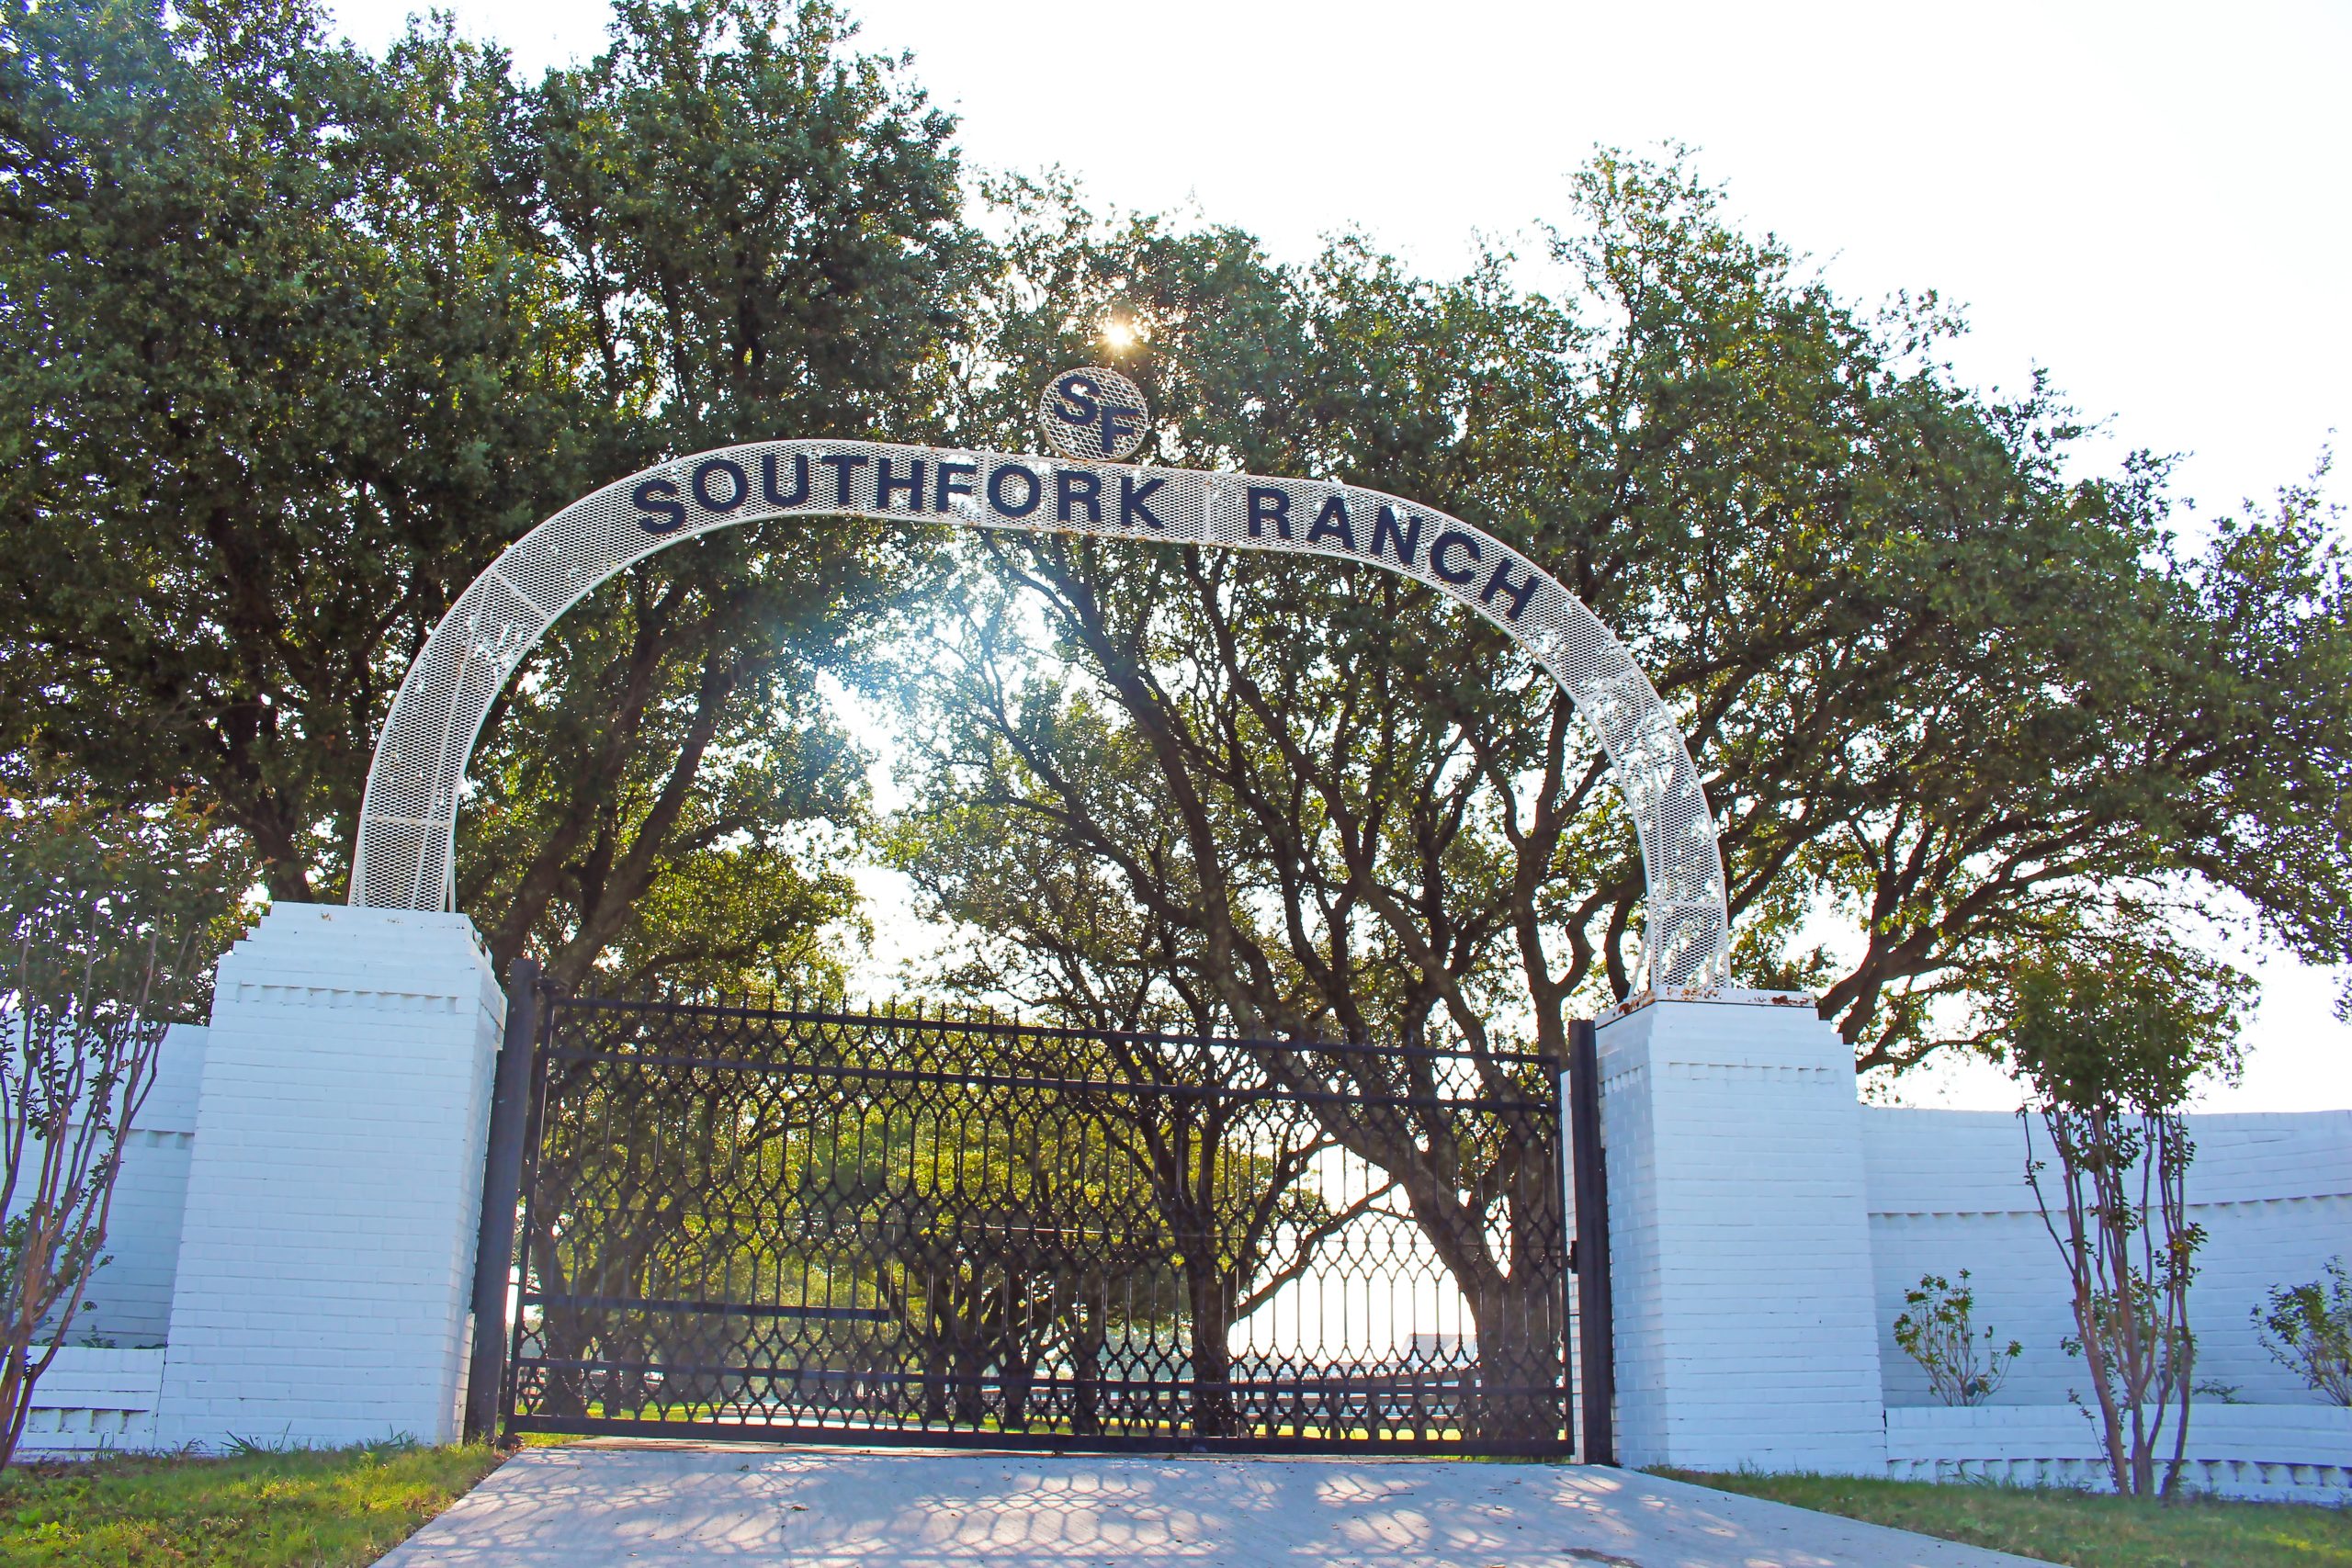 southfork ranch entrance